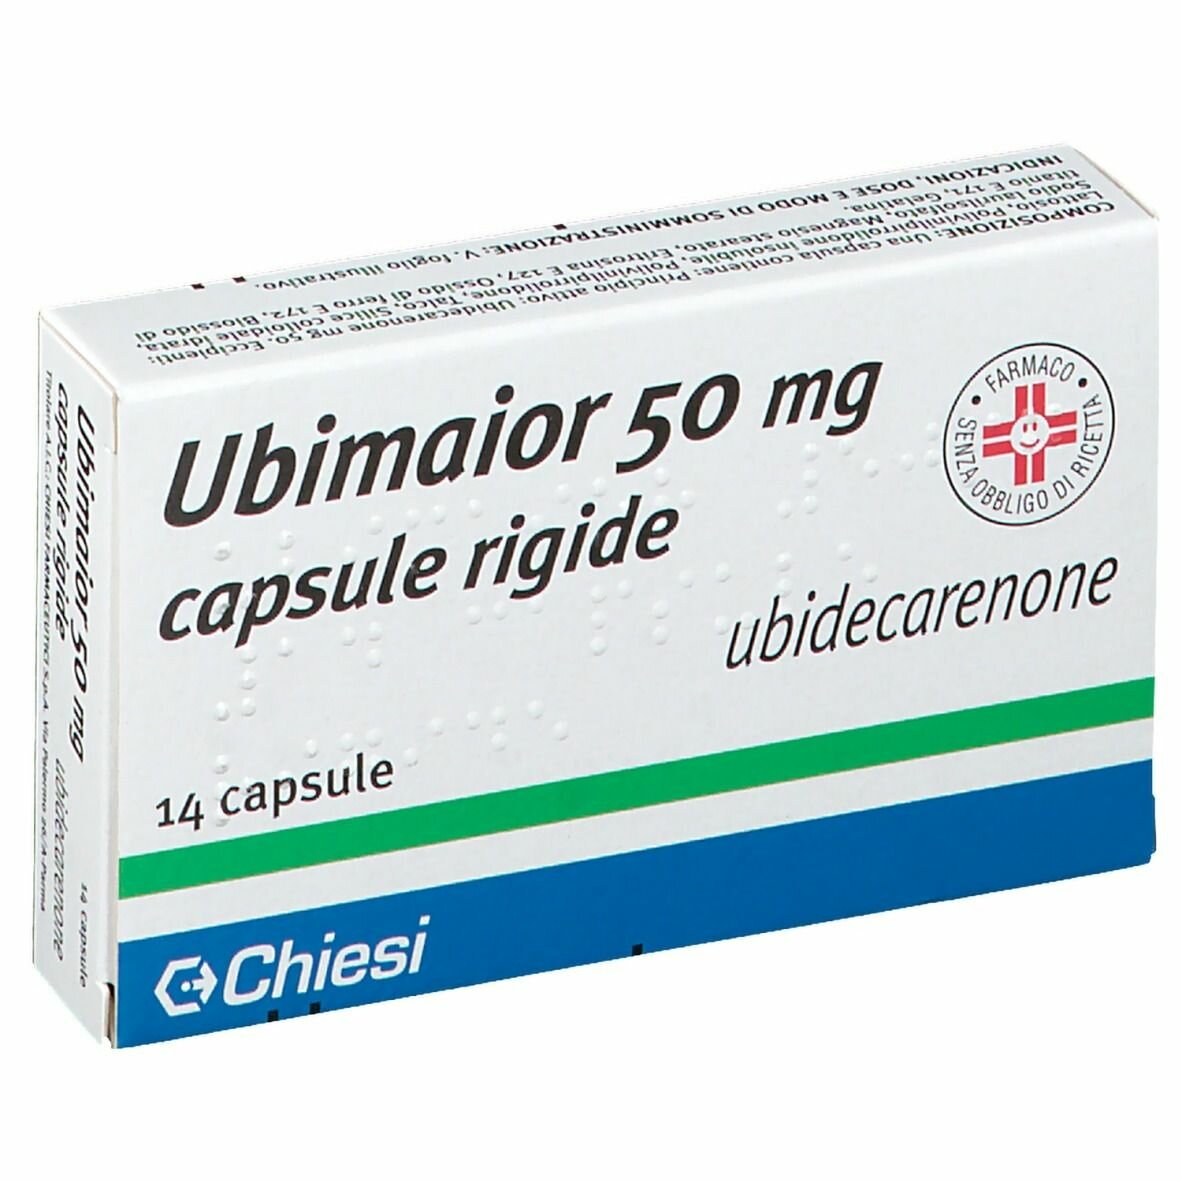 Immagine della confezione di Ubimaior, farmaco di Chiesi Farmaceutici S.p.A.